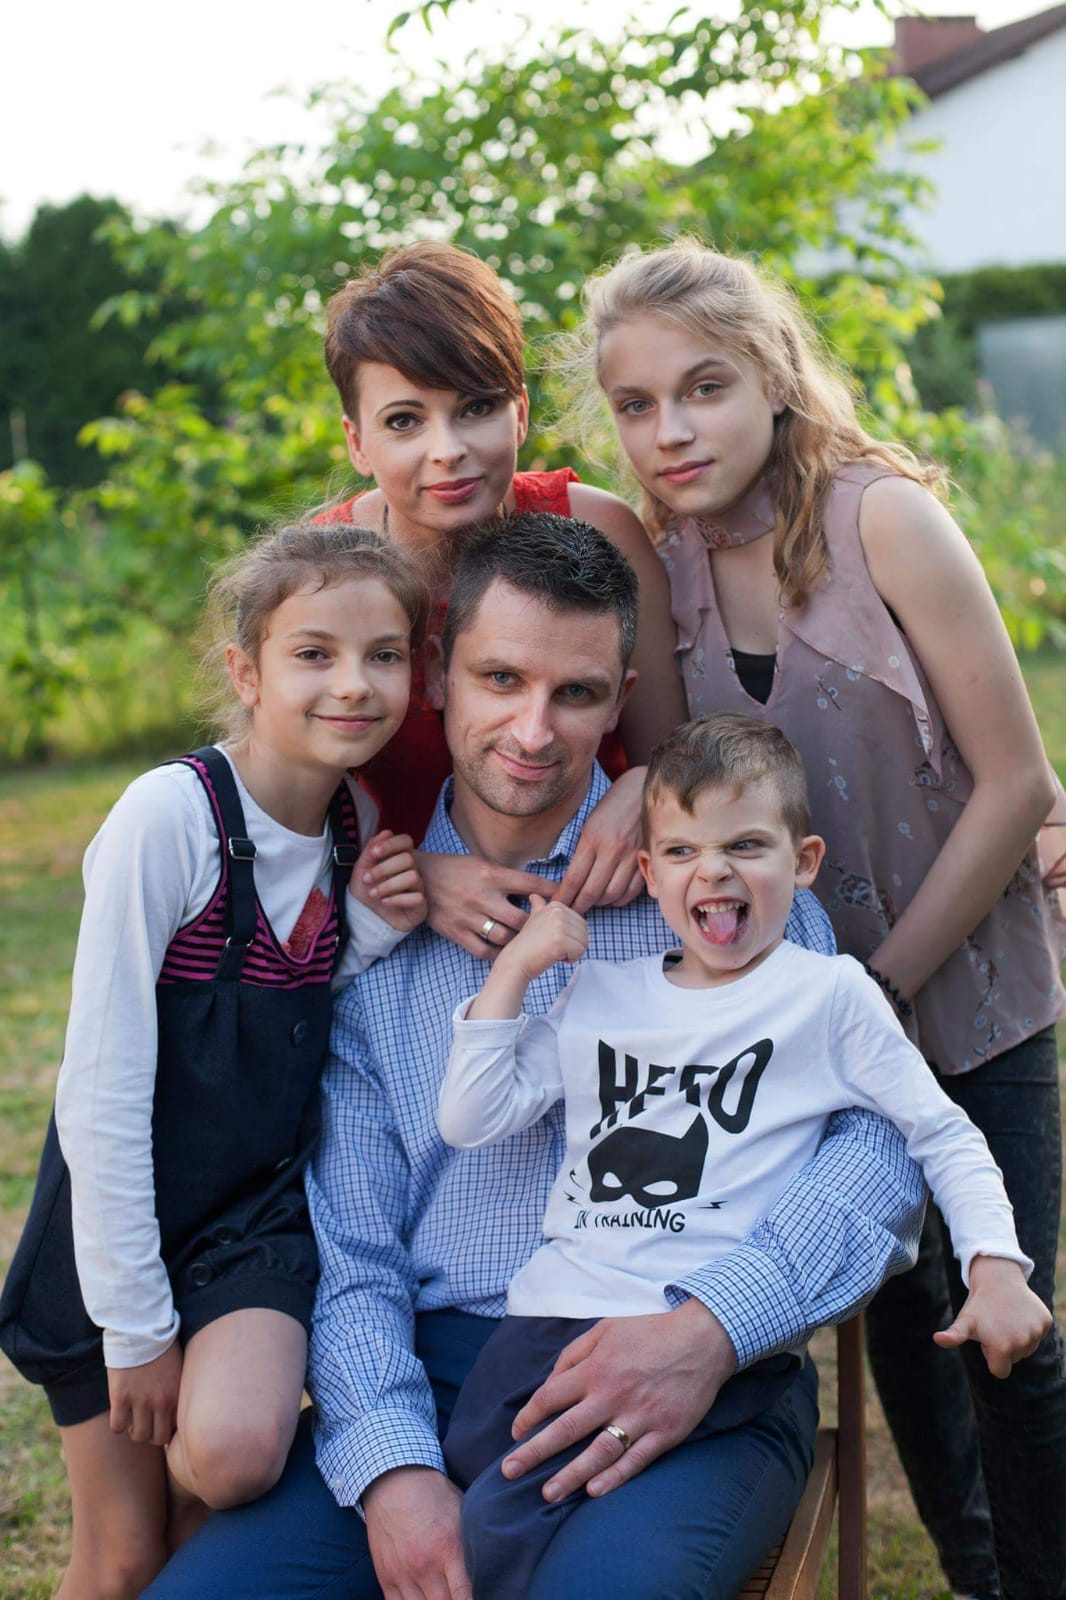 Lukasz Kozlowski and his family